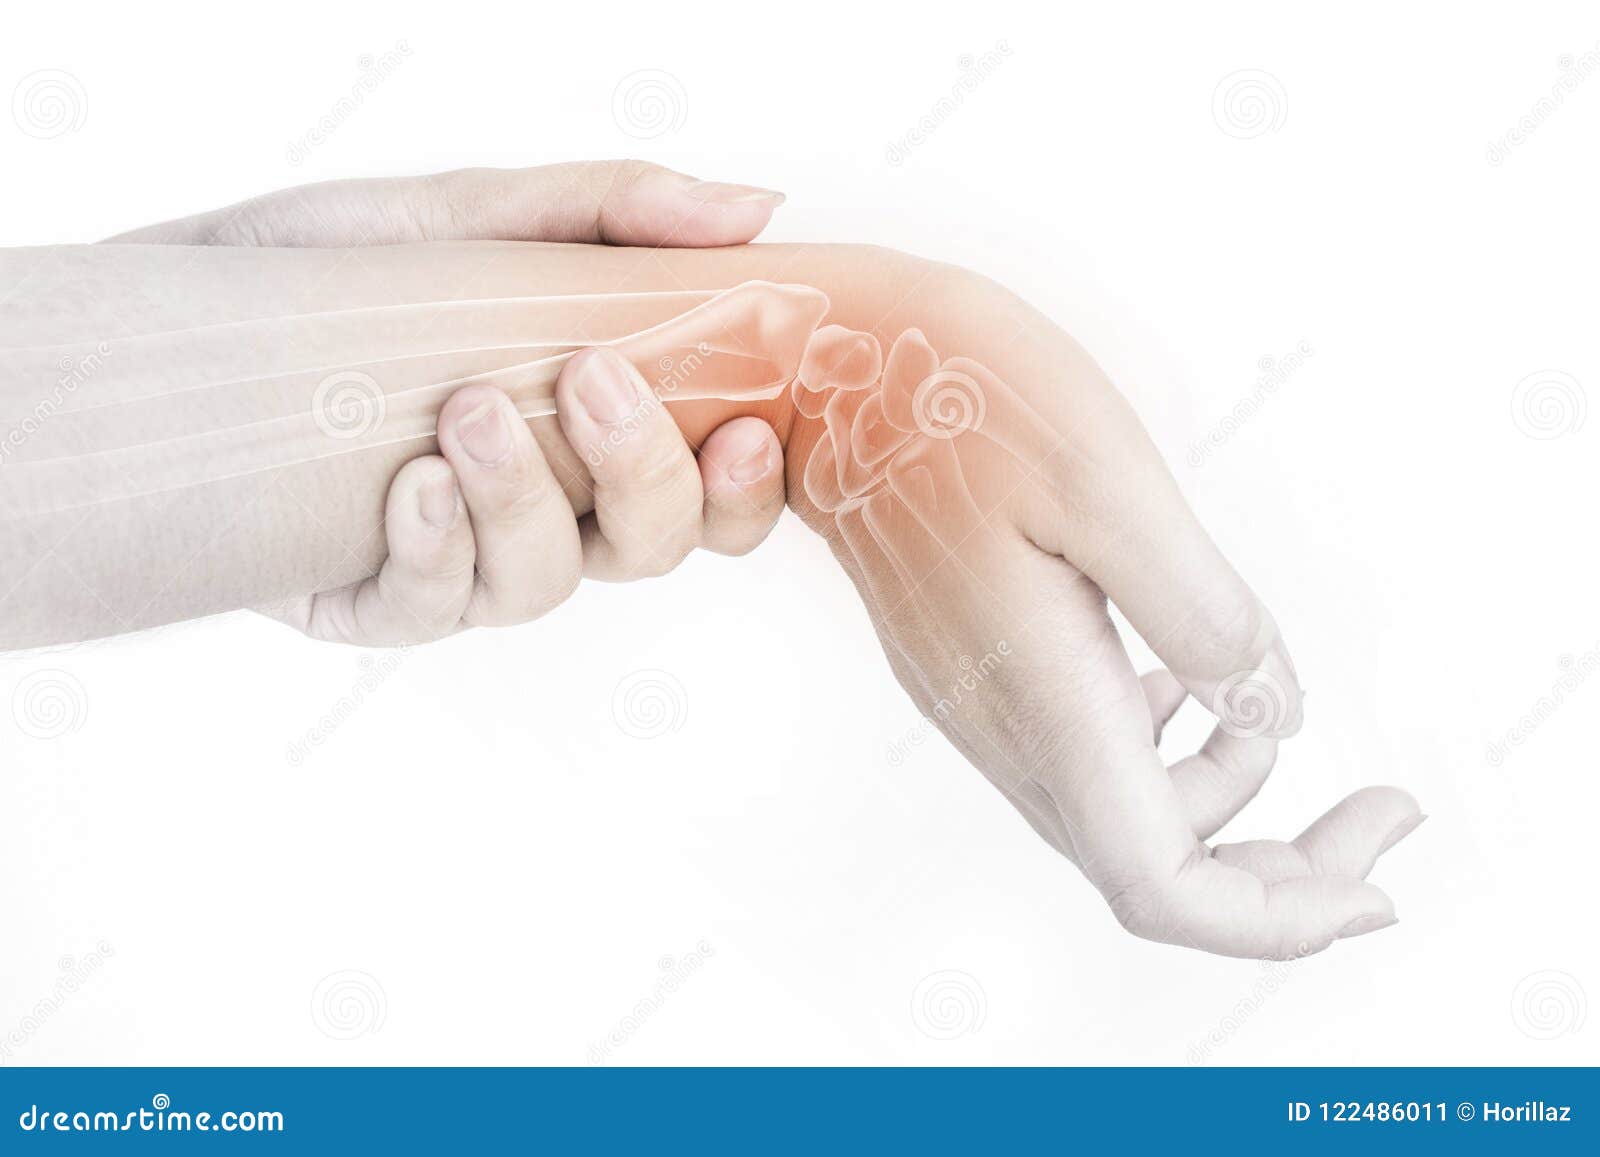 手麻警惕腕管综合征，这些人群高发，2个自测动作，能快速识别|腕管综合征|麻木感|肌电图|手麻|警惕|-健康界